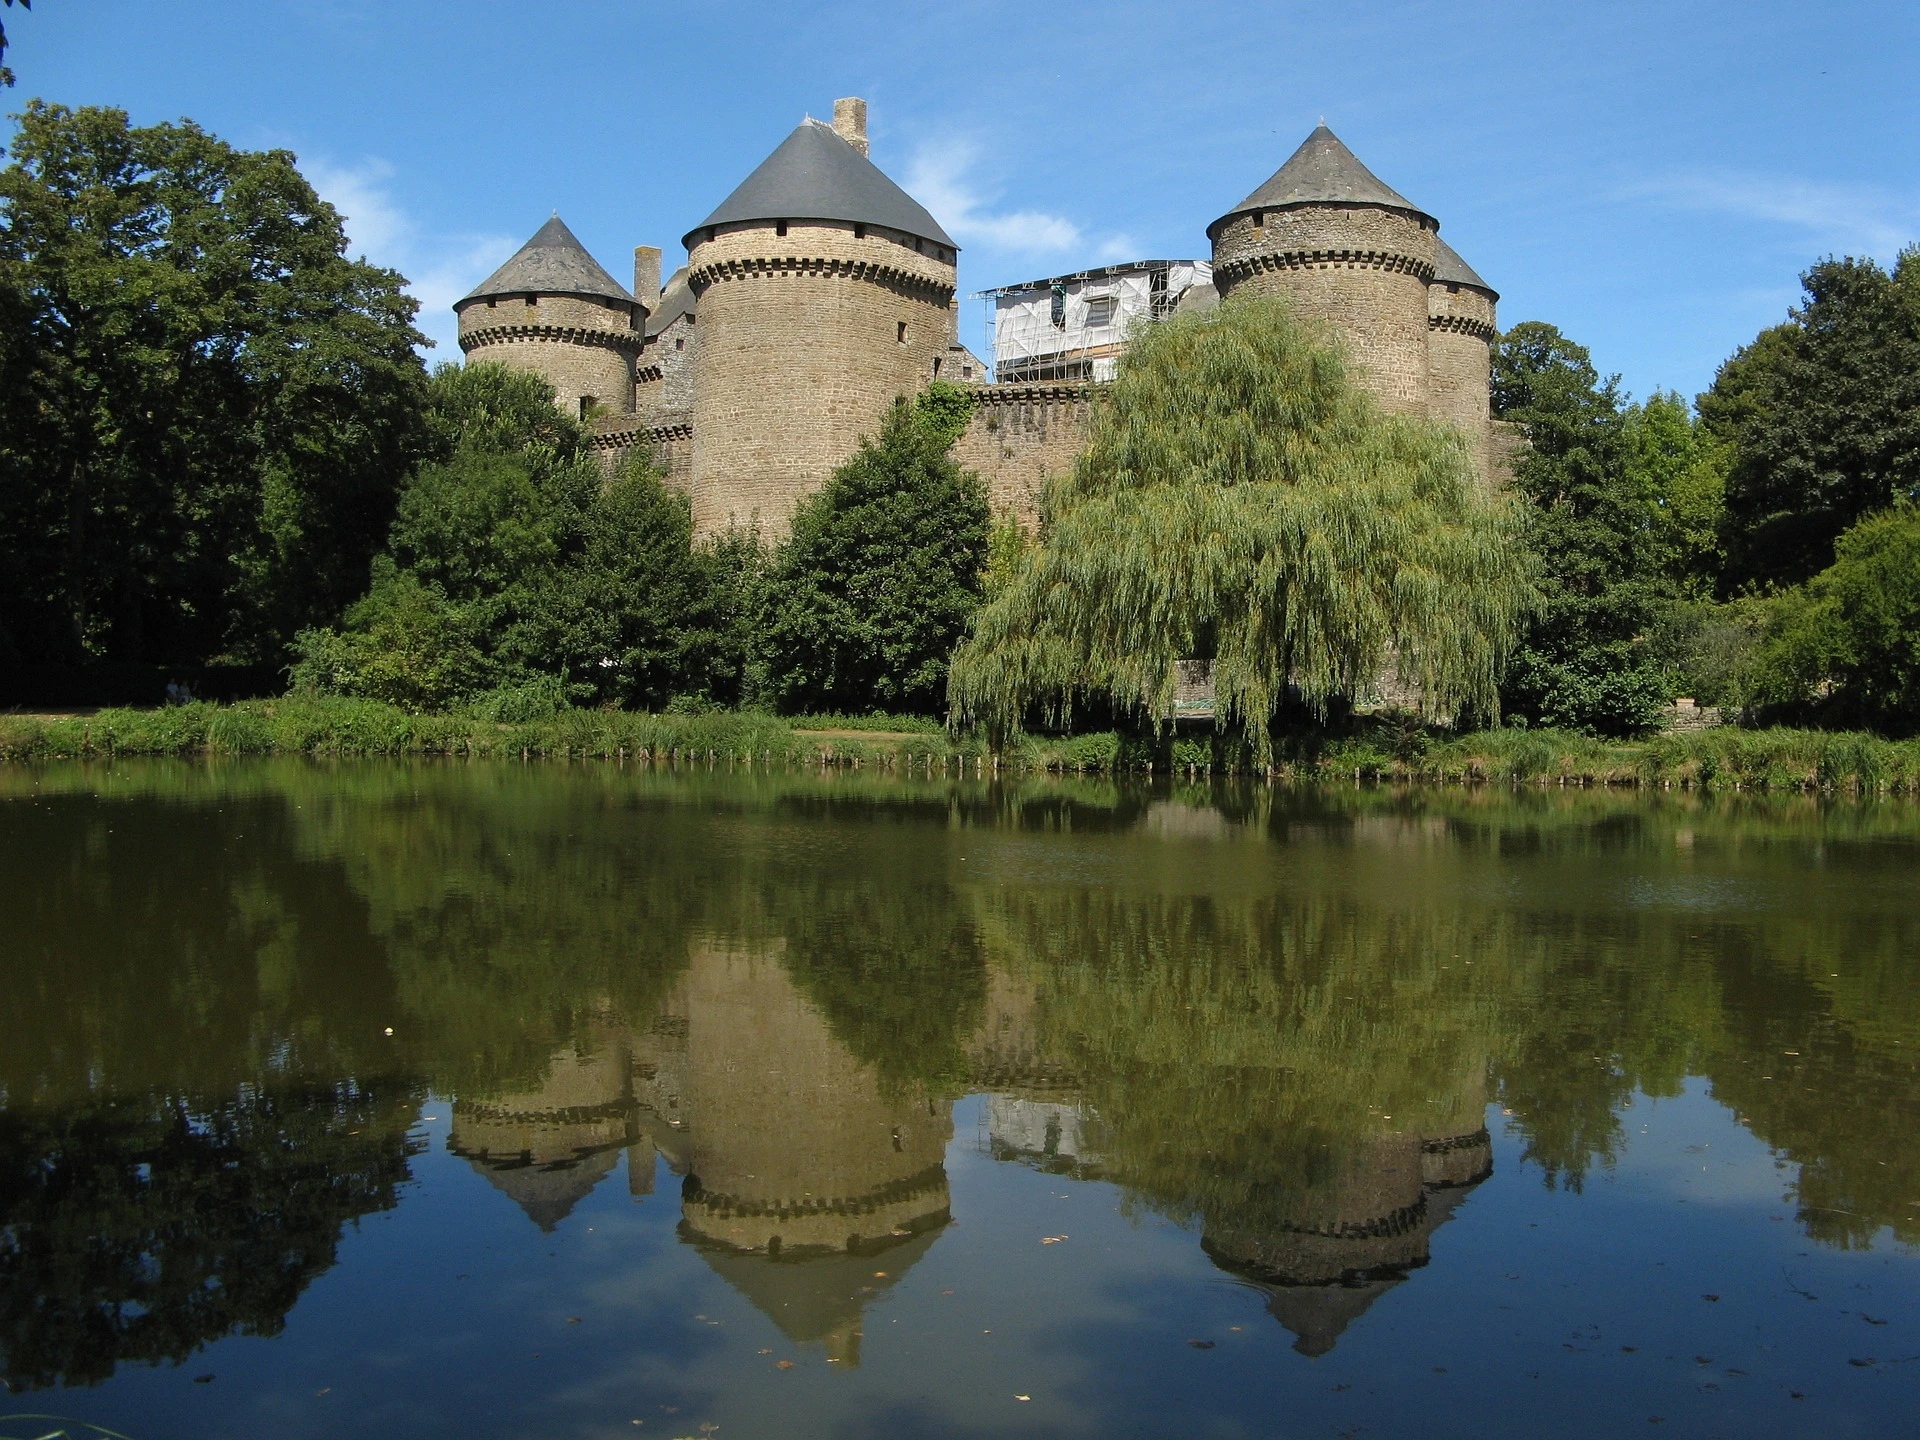 El castillo fortificado de Lassay les châteaux. Foto elegida por monsieurdefrance.com: por baccus7 de Pixabay